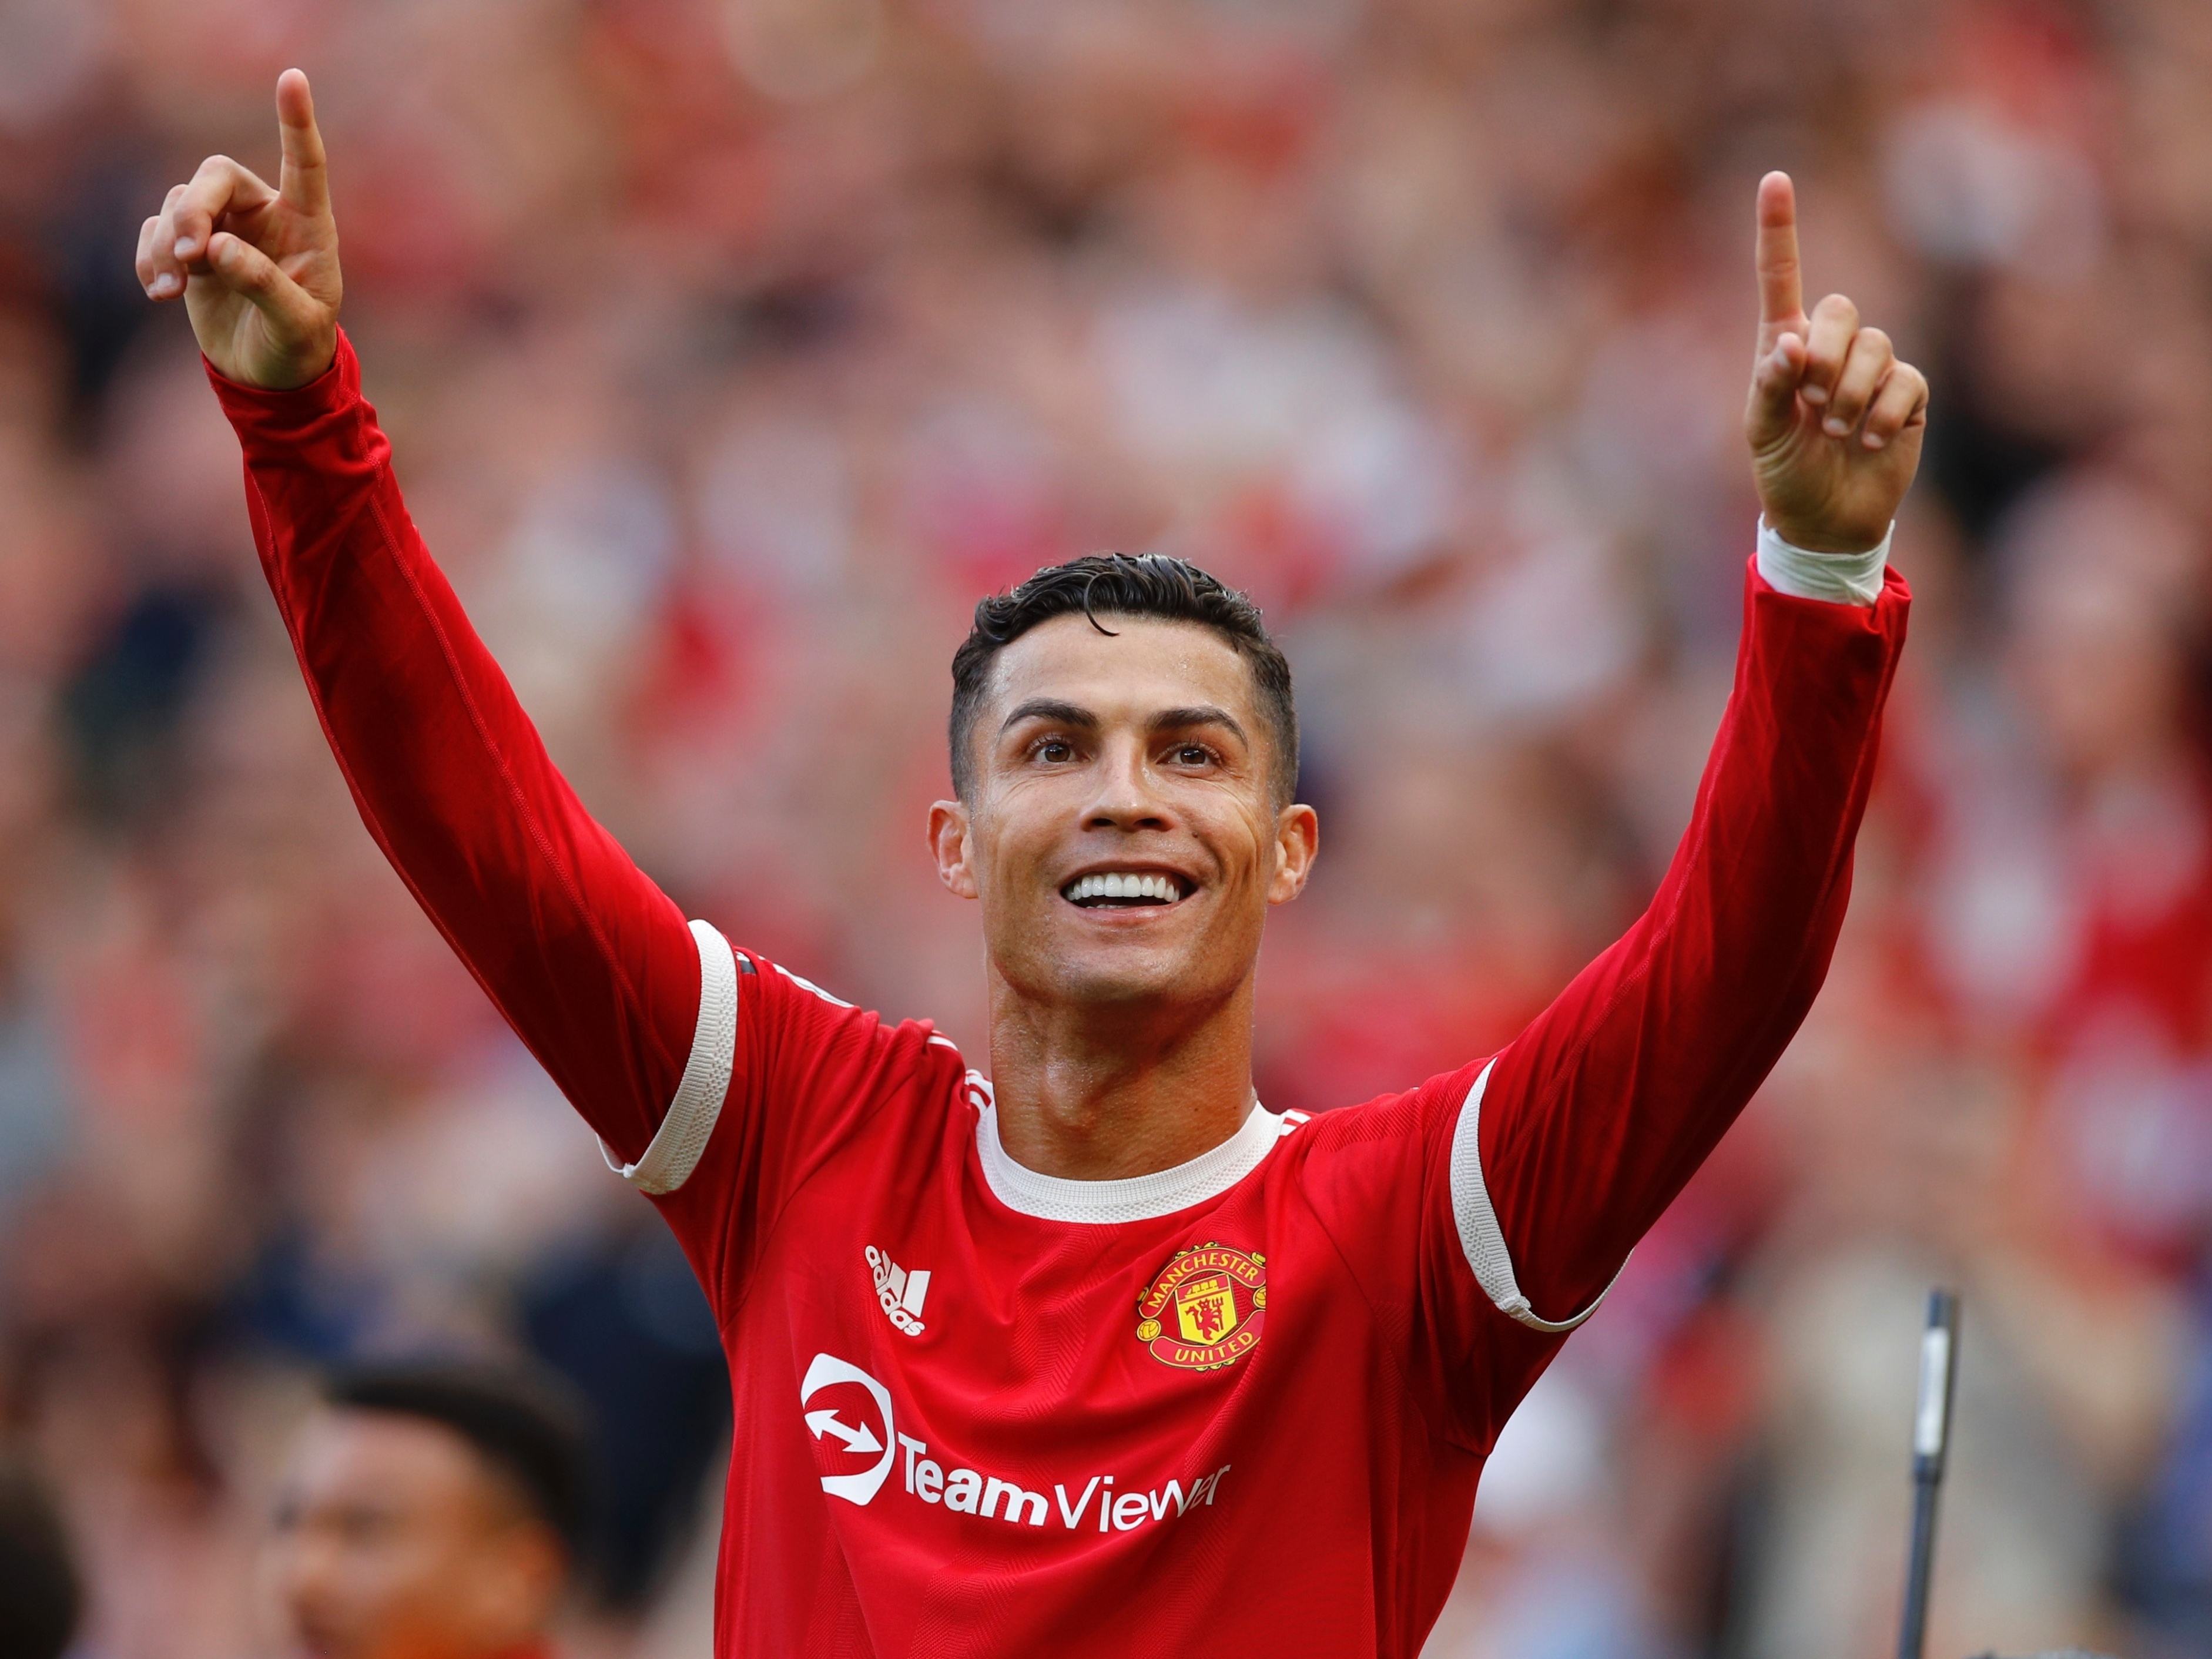 Caras  Cristiano Ronaldo eleito melhor jogador do mundo pela terceira vez